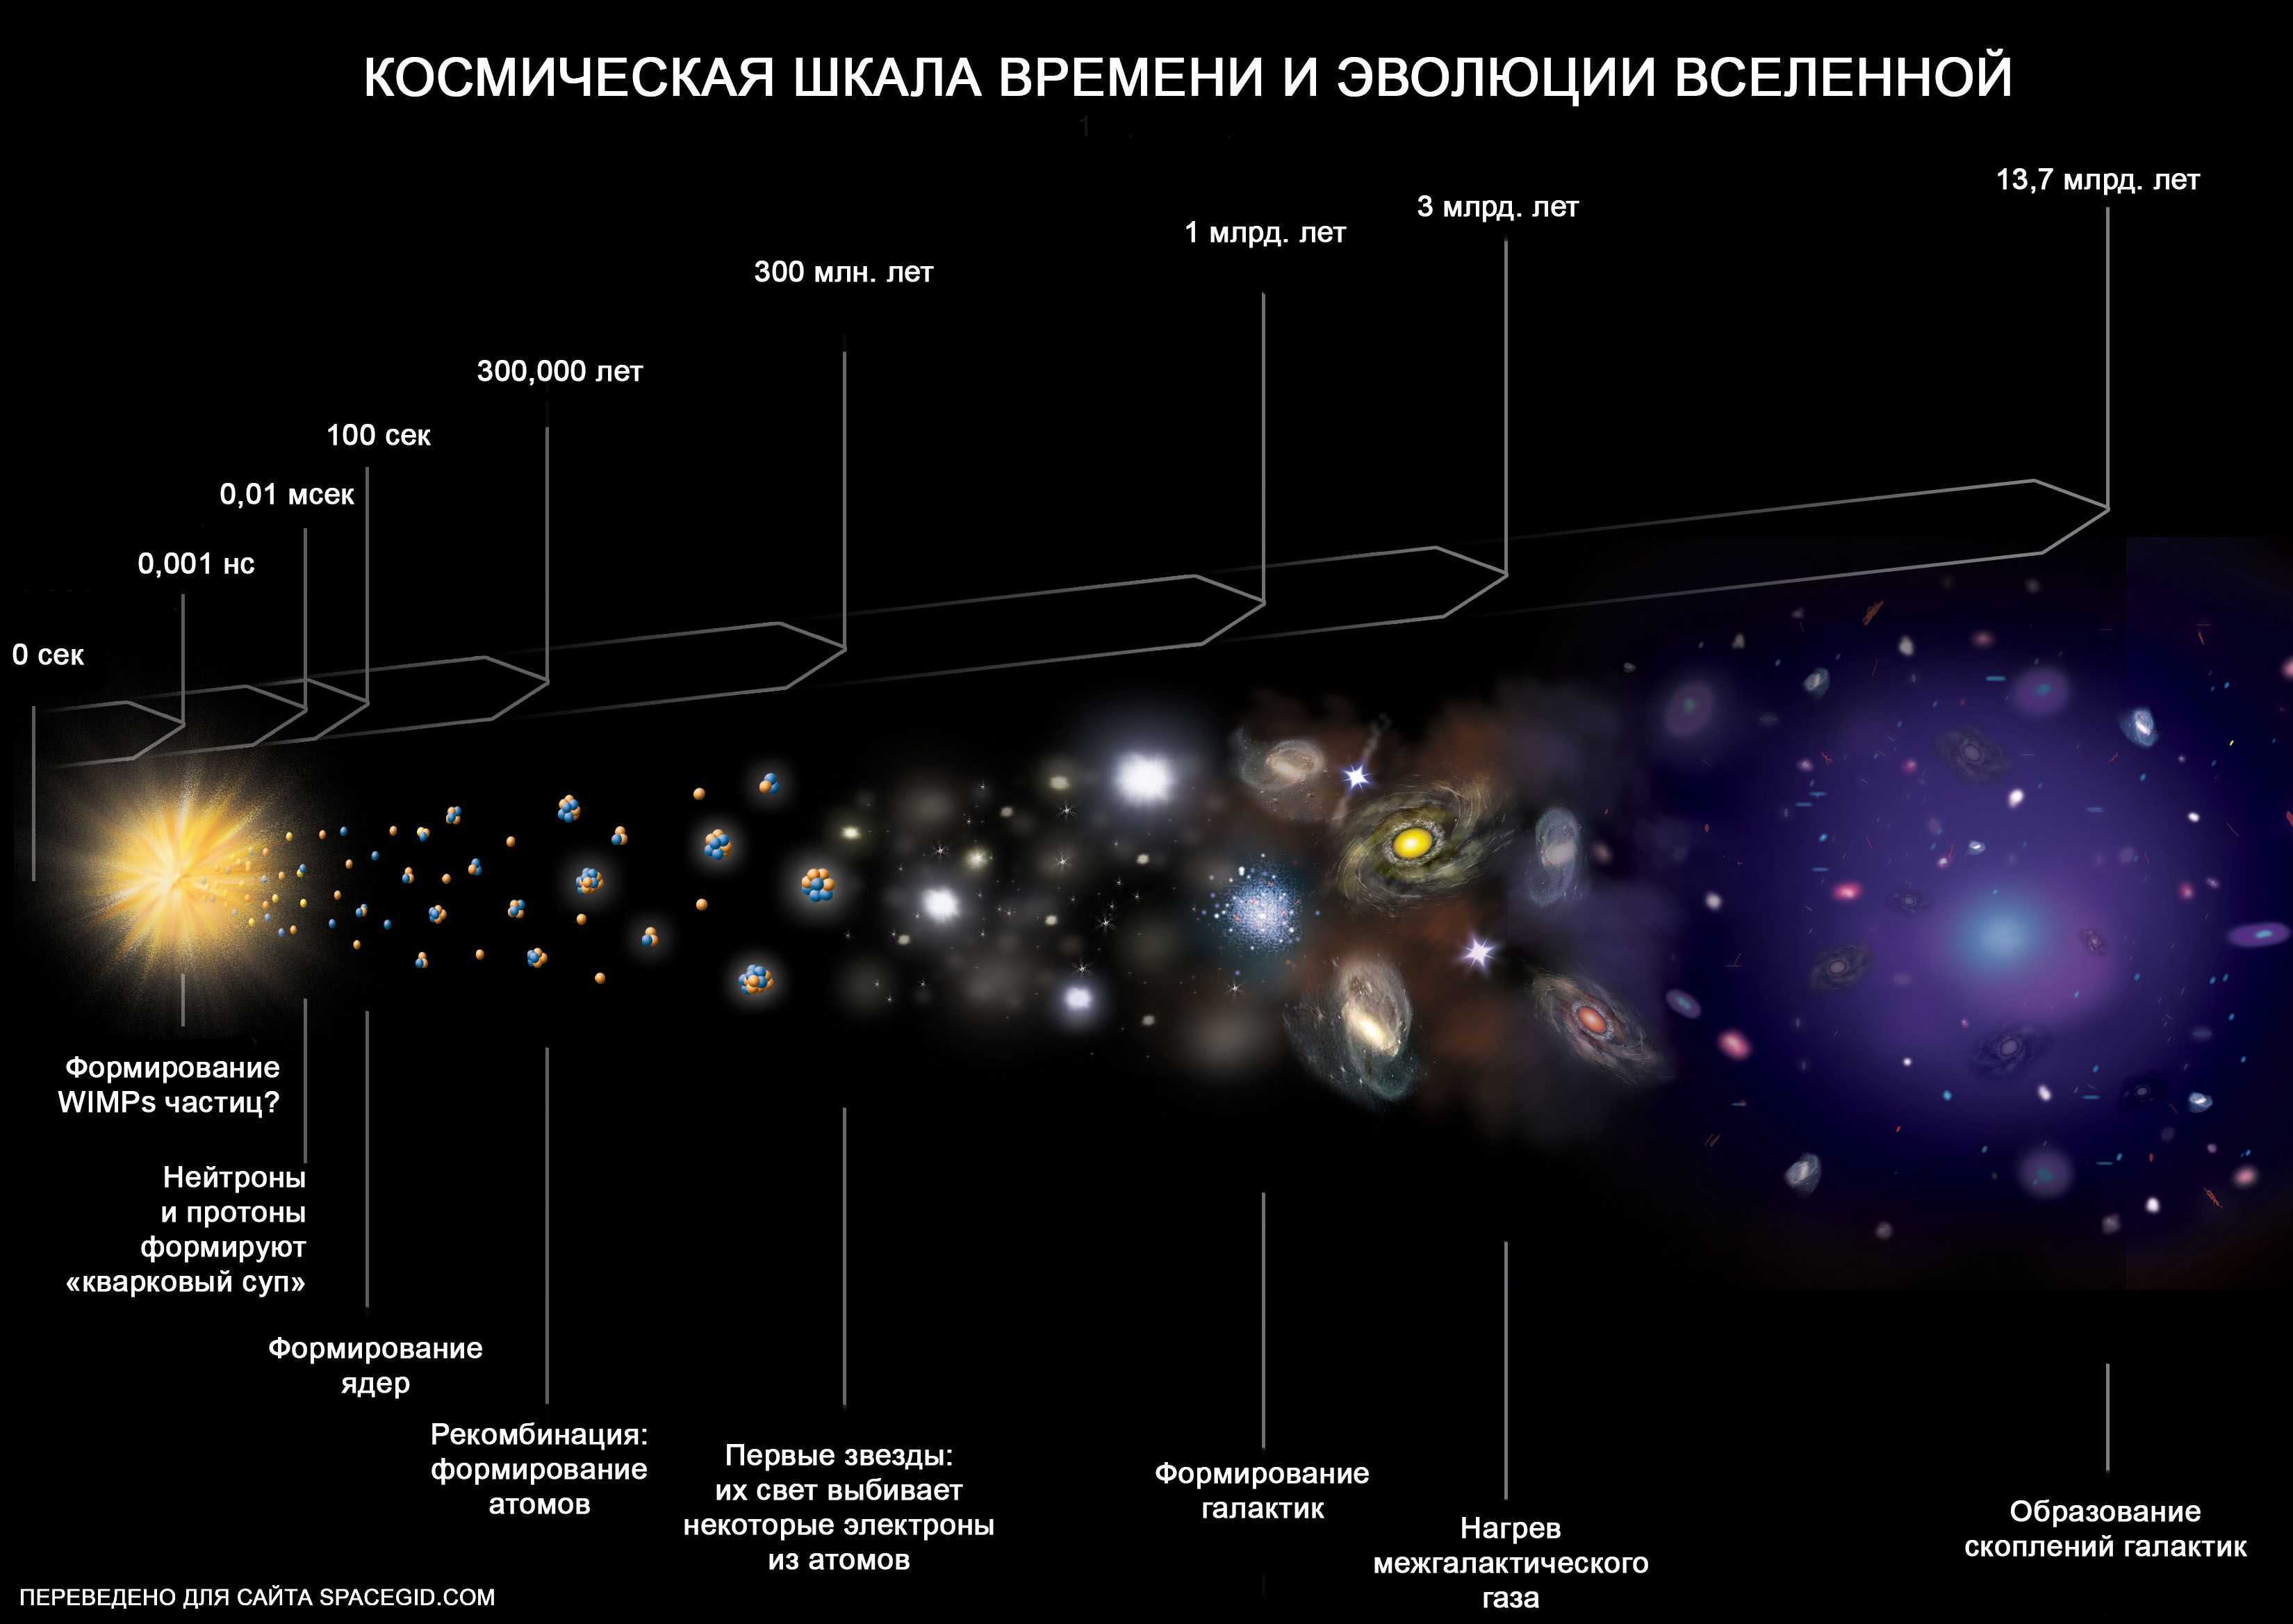 Галактик вселенной: классы, скопления галактик, туманностей и их типы, млечный путь